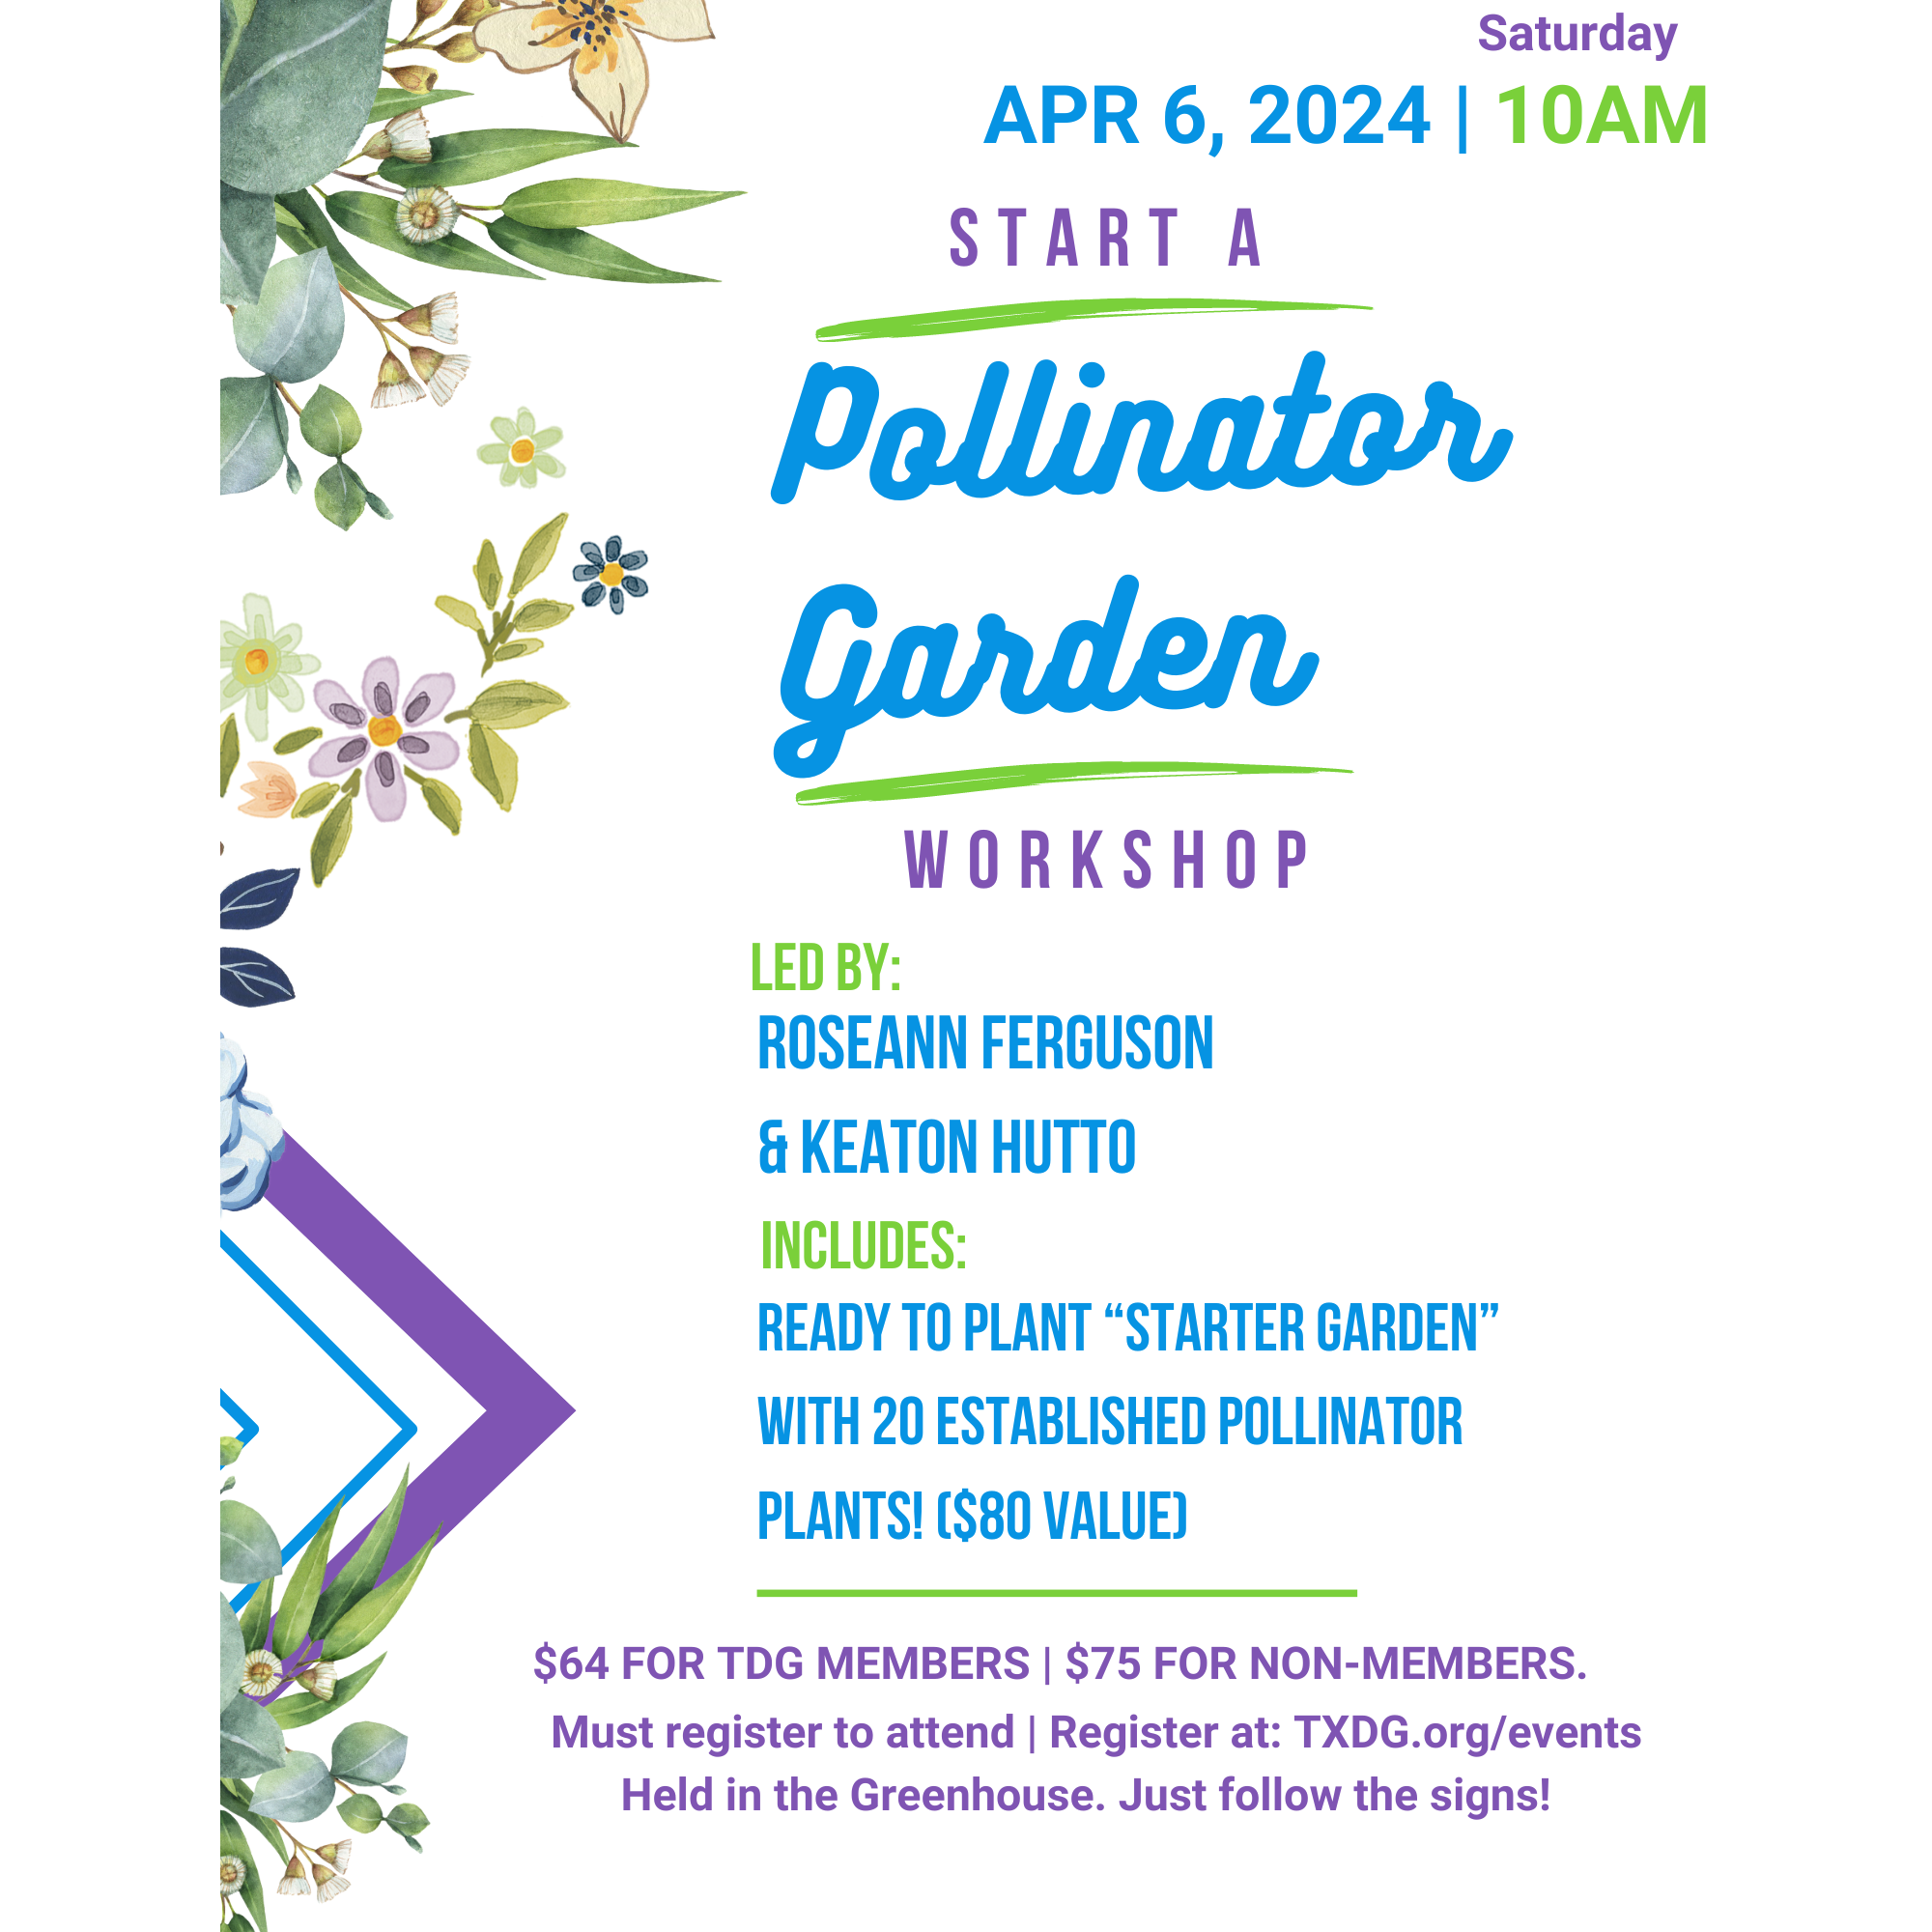 Start a Pollinator Garden Workshop